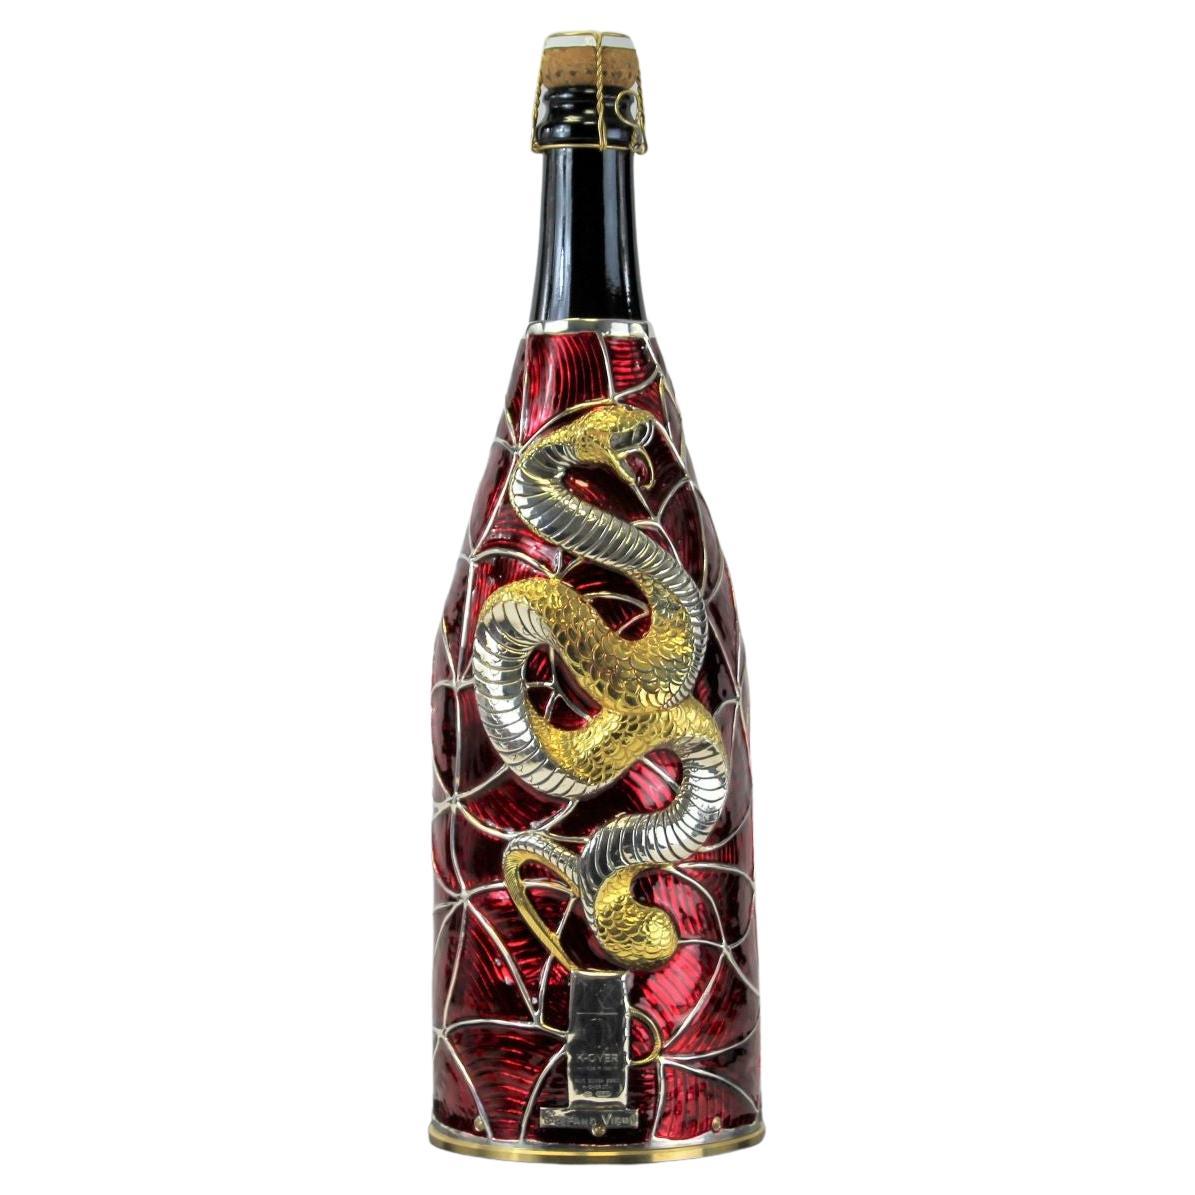 Ce Champagne K-OVER fait partie de notre Collection Work of Art.
Entièrement réalisée en argent pur 999/°°, ciselée et peinte à la main par notre Artistics Stefano Vigni.
L'Artistics a conçu un fond géométrique sinueux où un serpent d'or prend forme